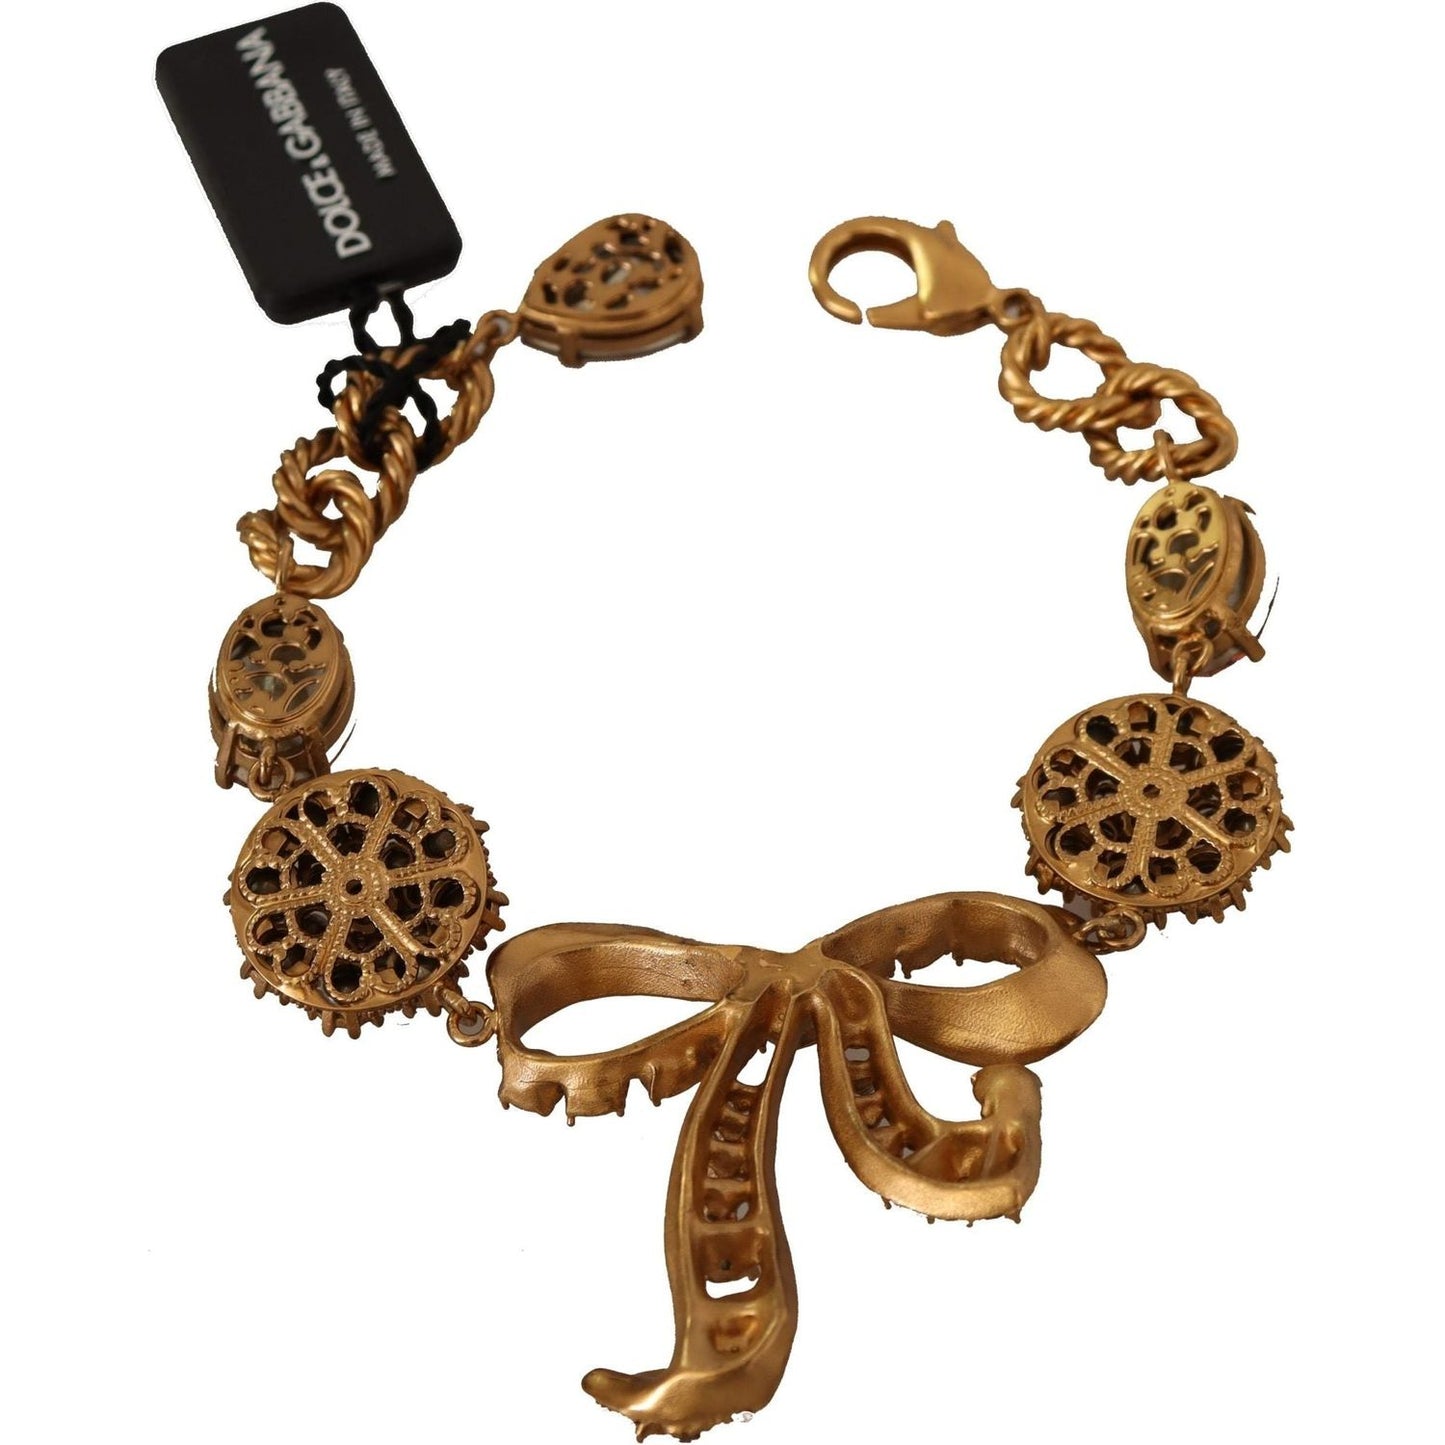 Dolce & Gabbana Elegant Crystal Charm Gold Bracelet WOMAN BRACELET gold-brass-chain-baroque-crystal-embellished-bracelet